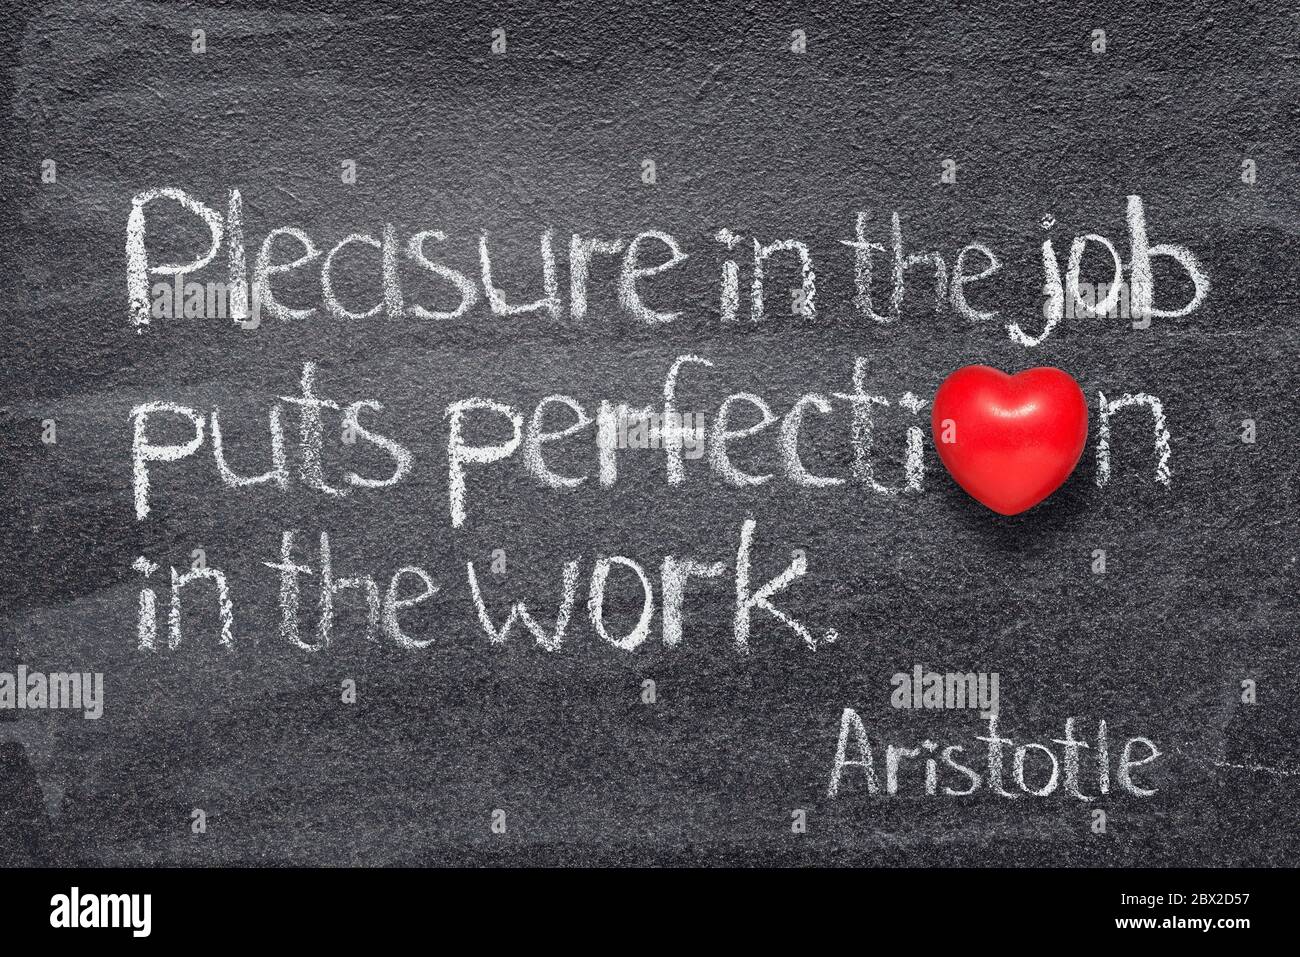 Il piacere nel lavoro mette la perfezione nel lavoro - citazione del filosofo greco antico Aristotele scritto su lavagna con cuore rosso invece di o Foto Stock